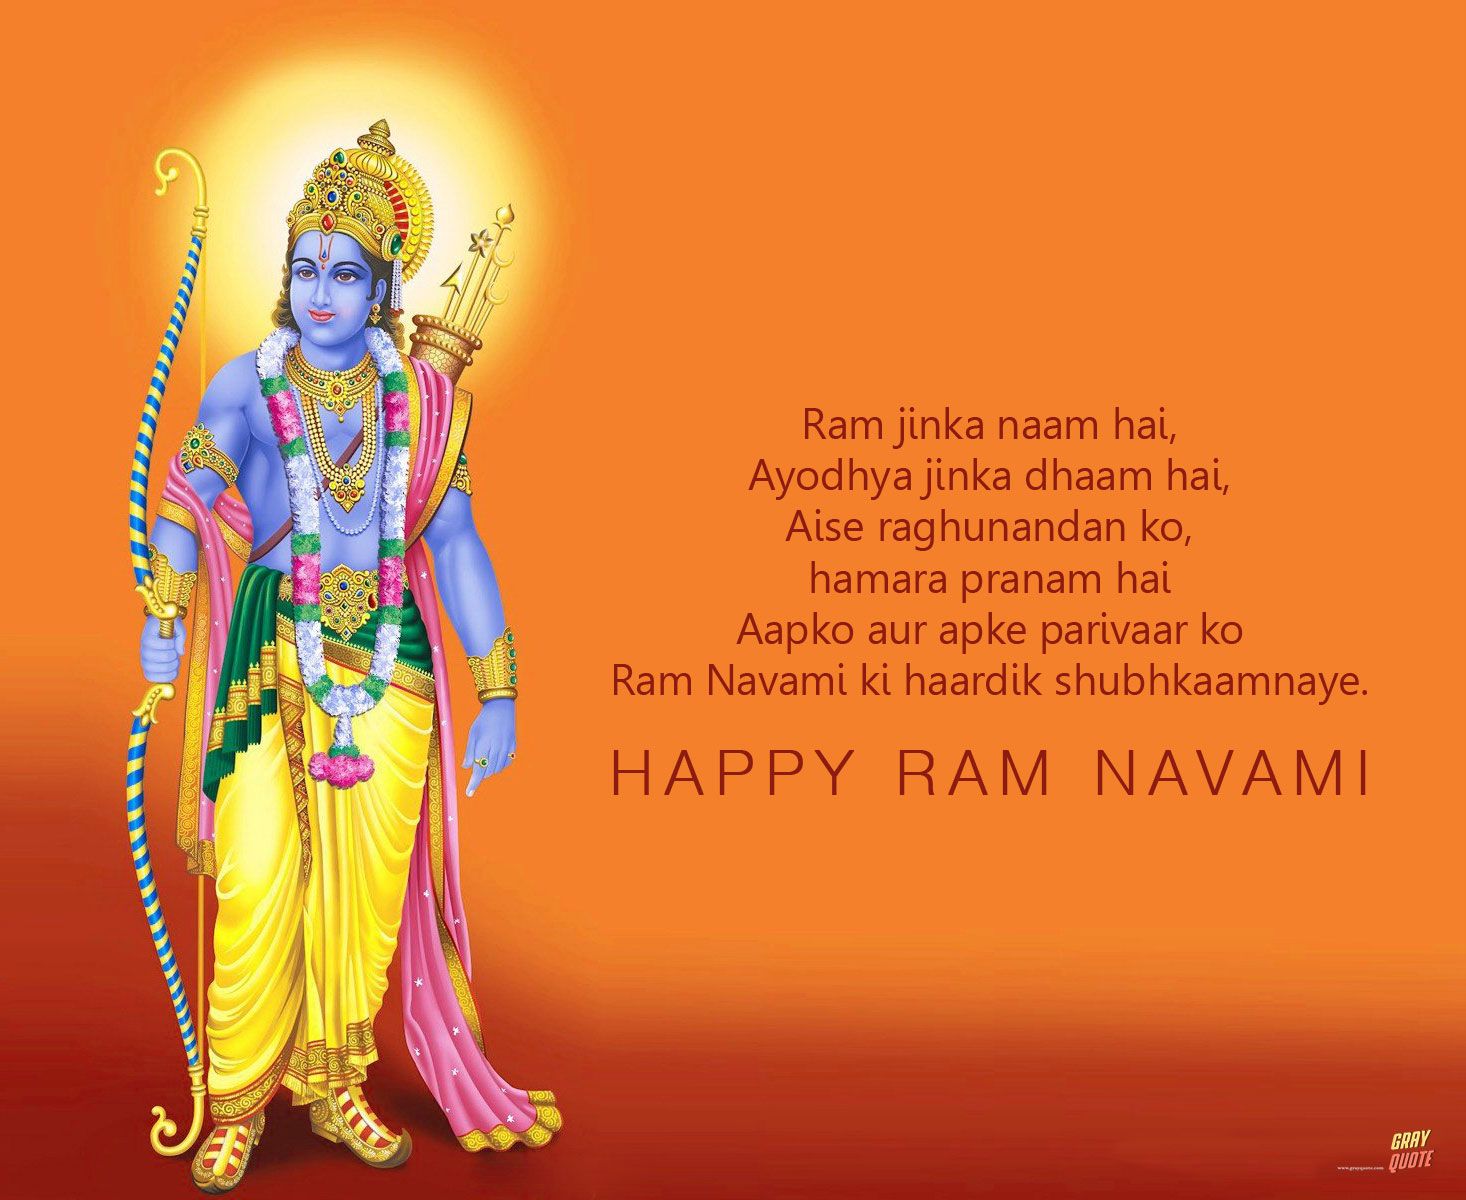 Happy Rama Navami Ram Navami 2019